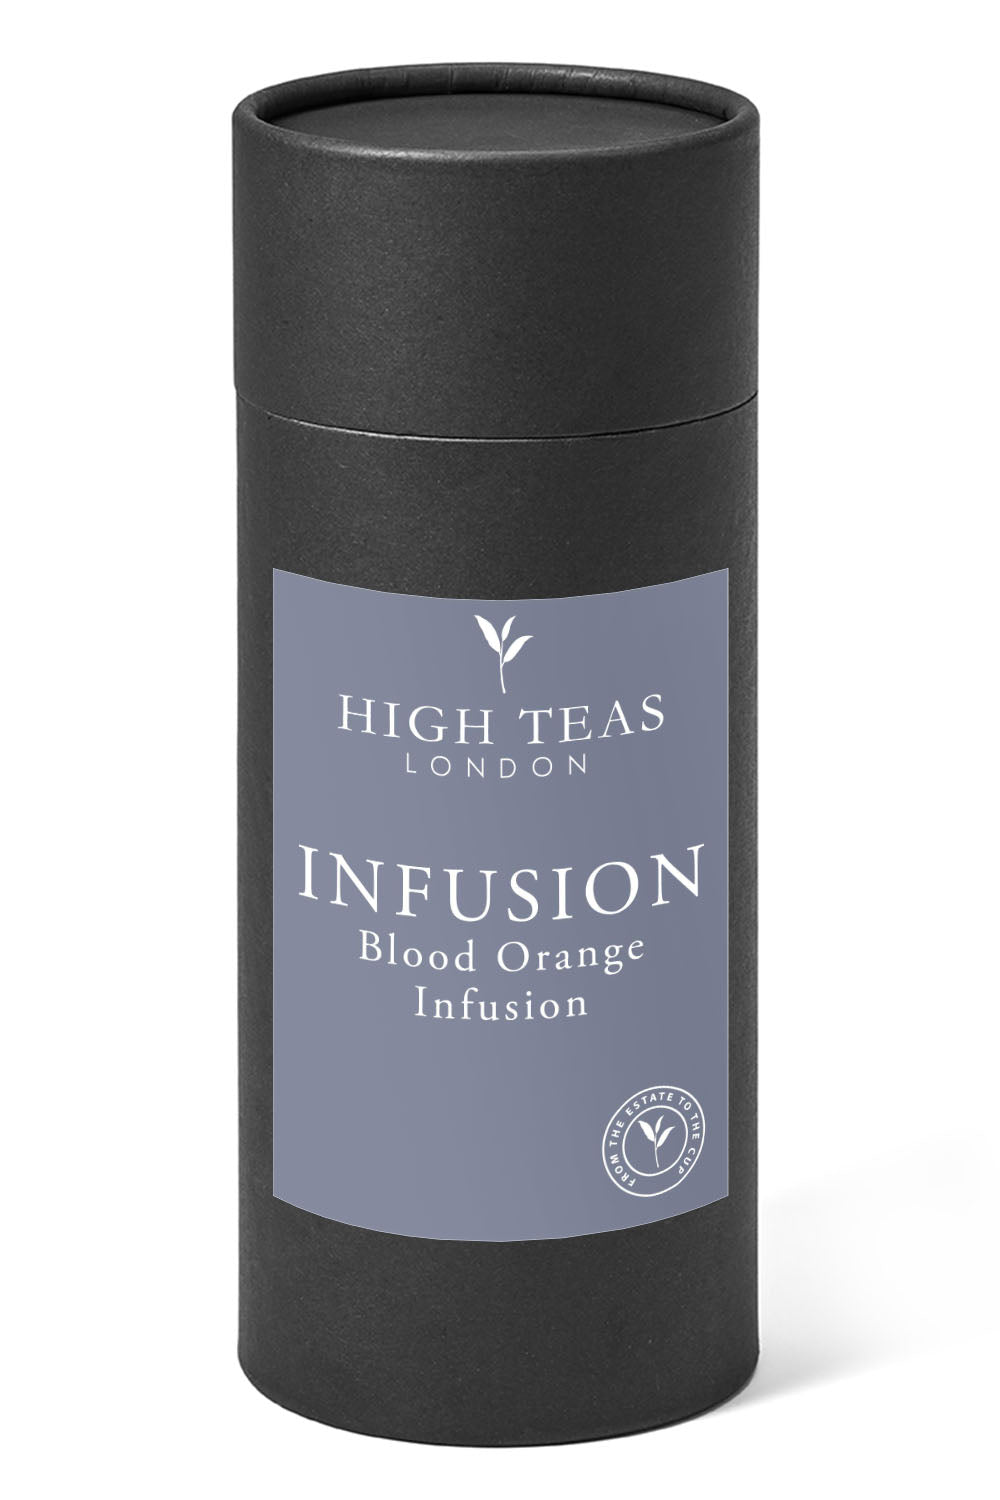 Blood Orange Infusion-150g gift-Loose Leaf Tea-High Teas